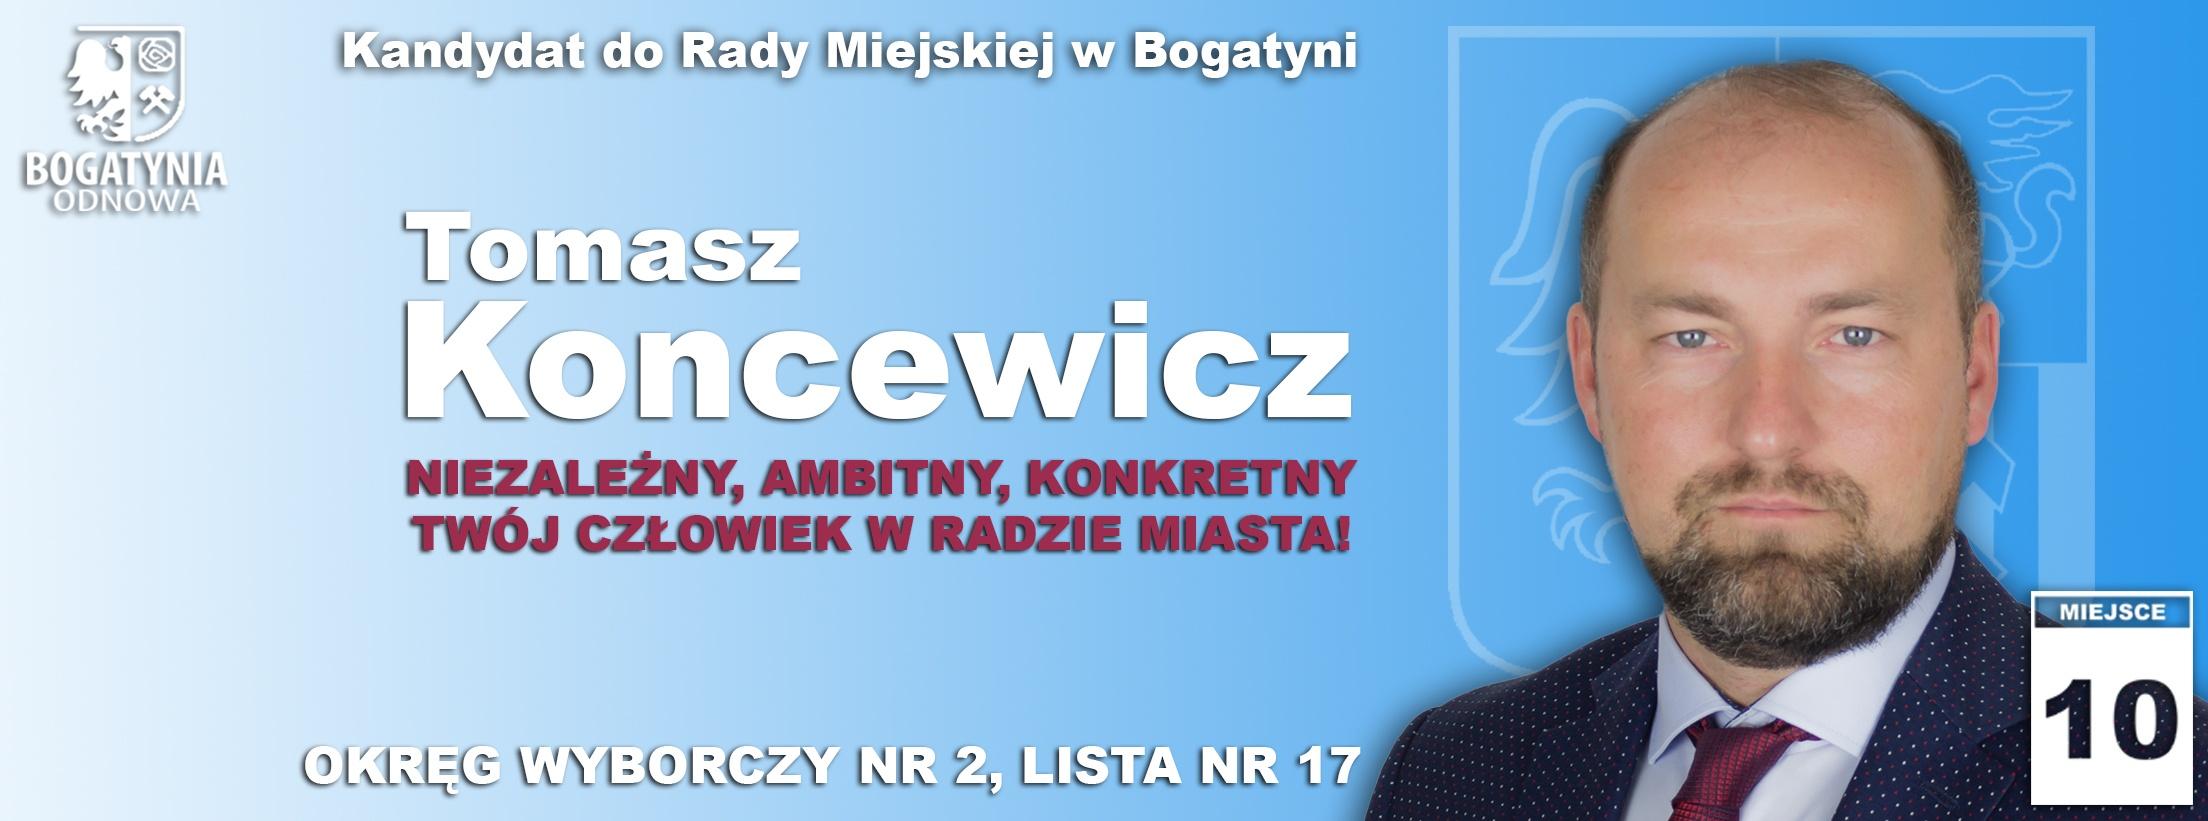 Tomasz Koncewicz - kandydat do Rady Miejskiej w Bogatyni